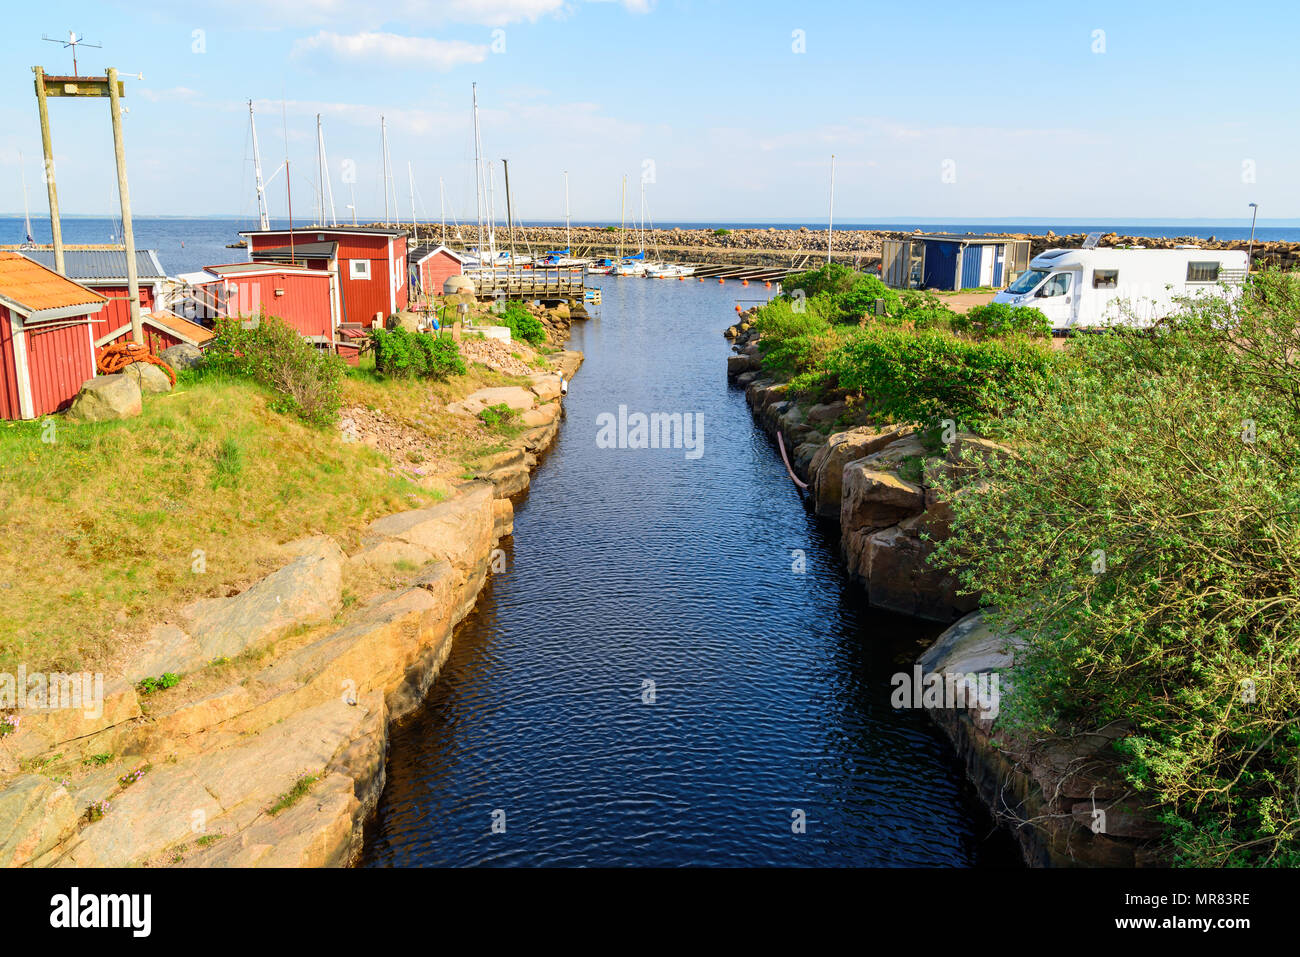 Canal droit et étroit dans une marina dans Grotvik, à l'extérieur de Halmstad, Suède. Logos déposés. Banque D'Images